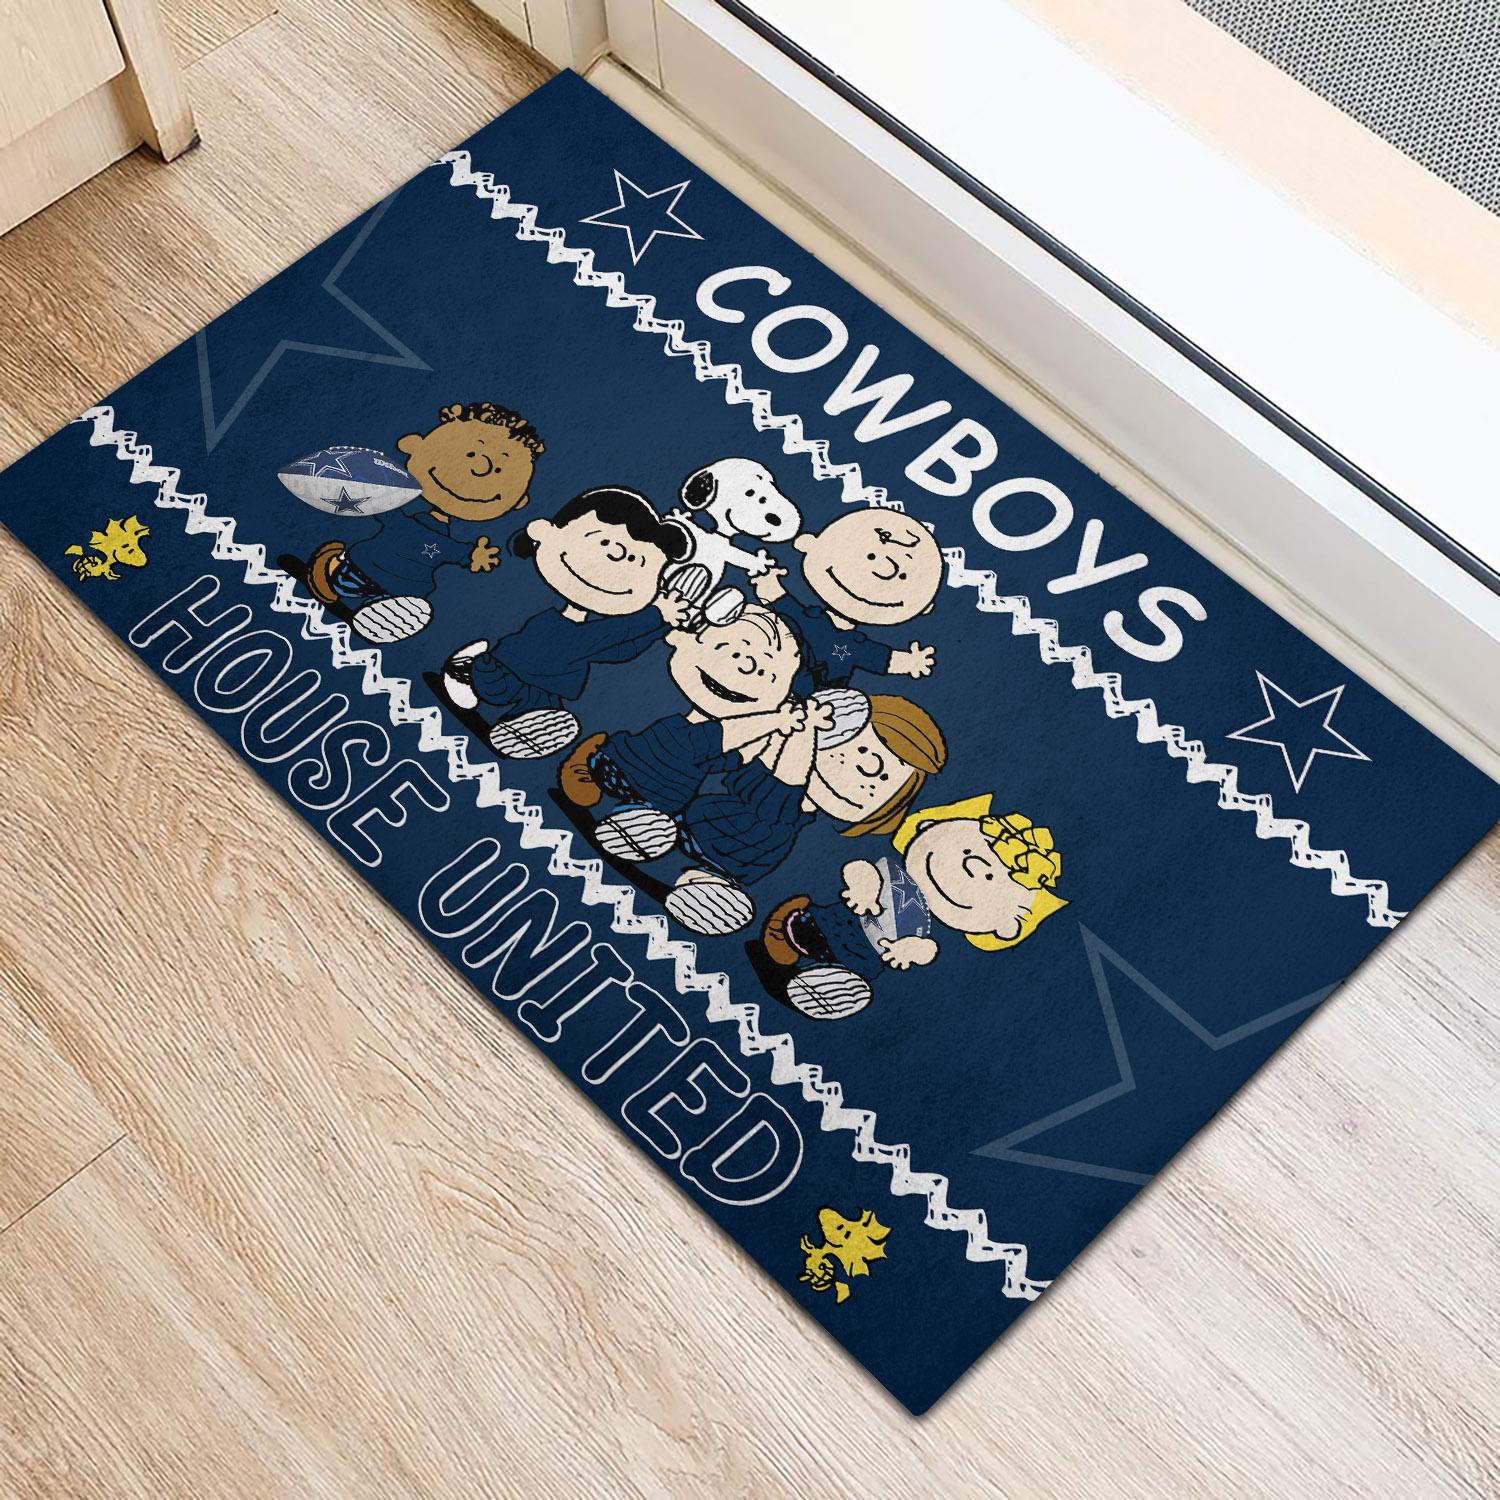 Dallas Cowboys Peanuts House United Doormat